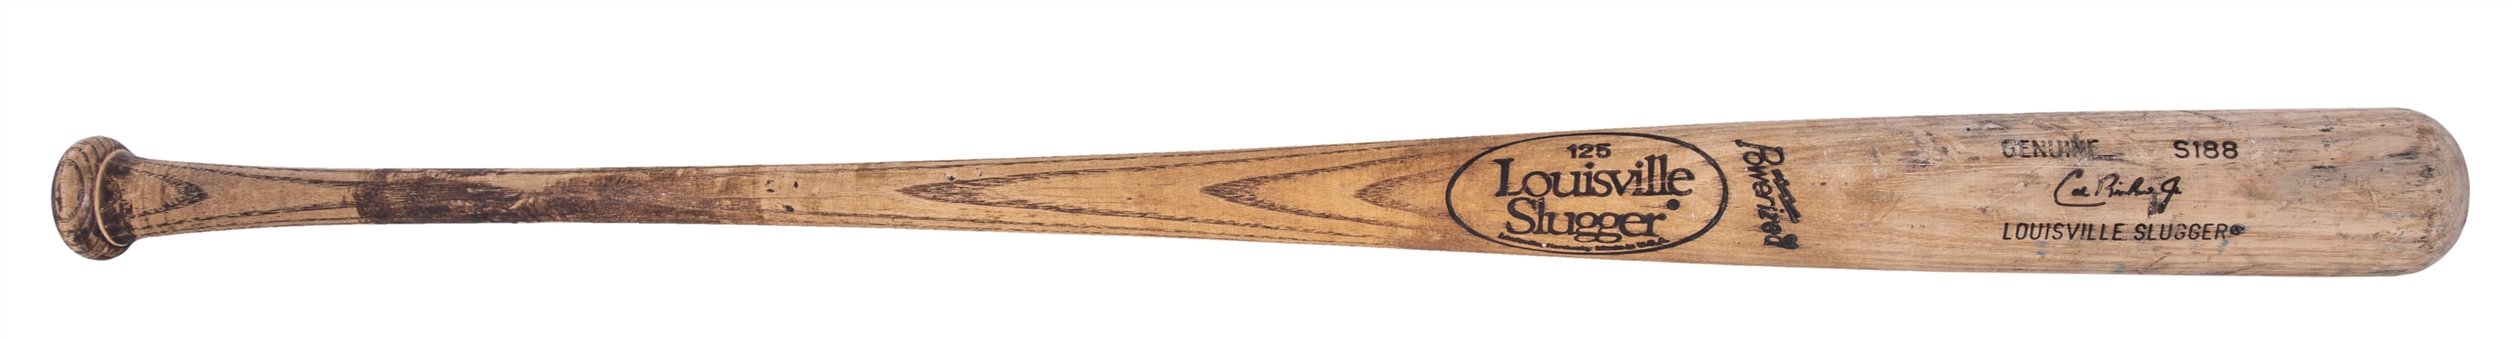 1990 Cal Ripken Jr Game Used Louisville Slugger S188 Model Bat (PSA/DNA GU 10)